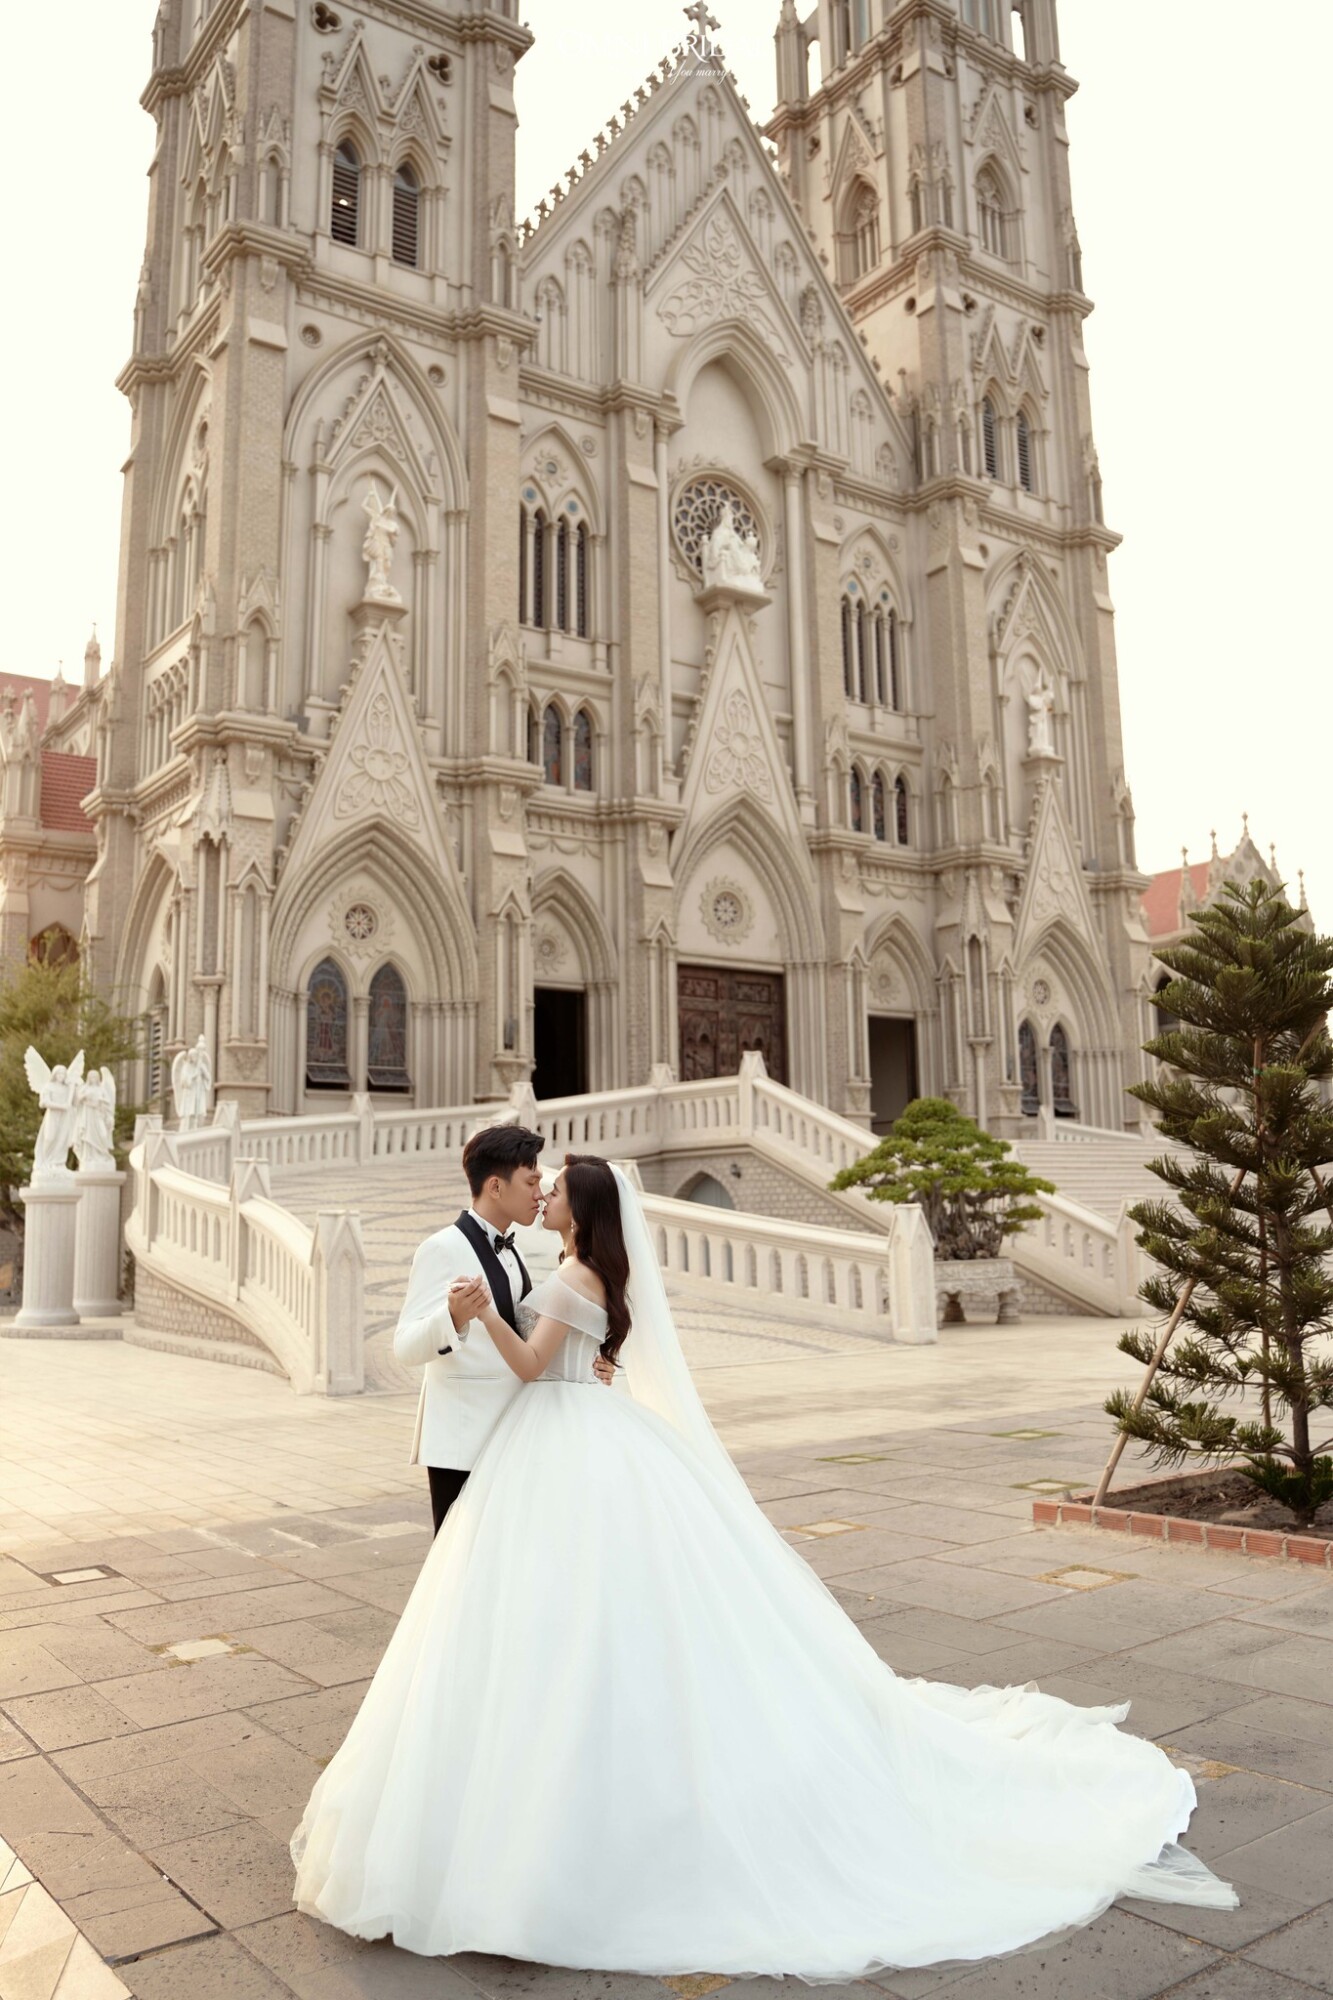 Phong cách chụp hình cưới ở nhà thờ